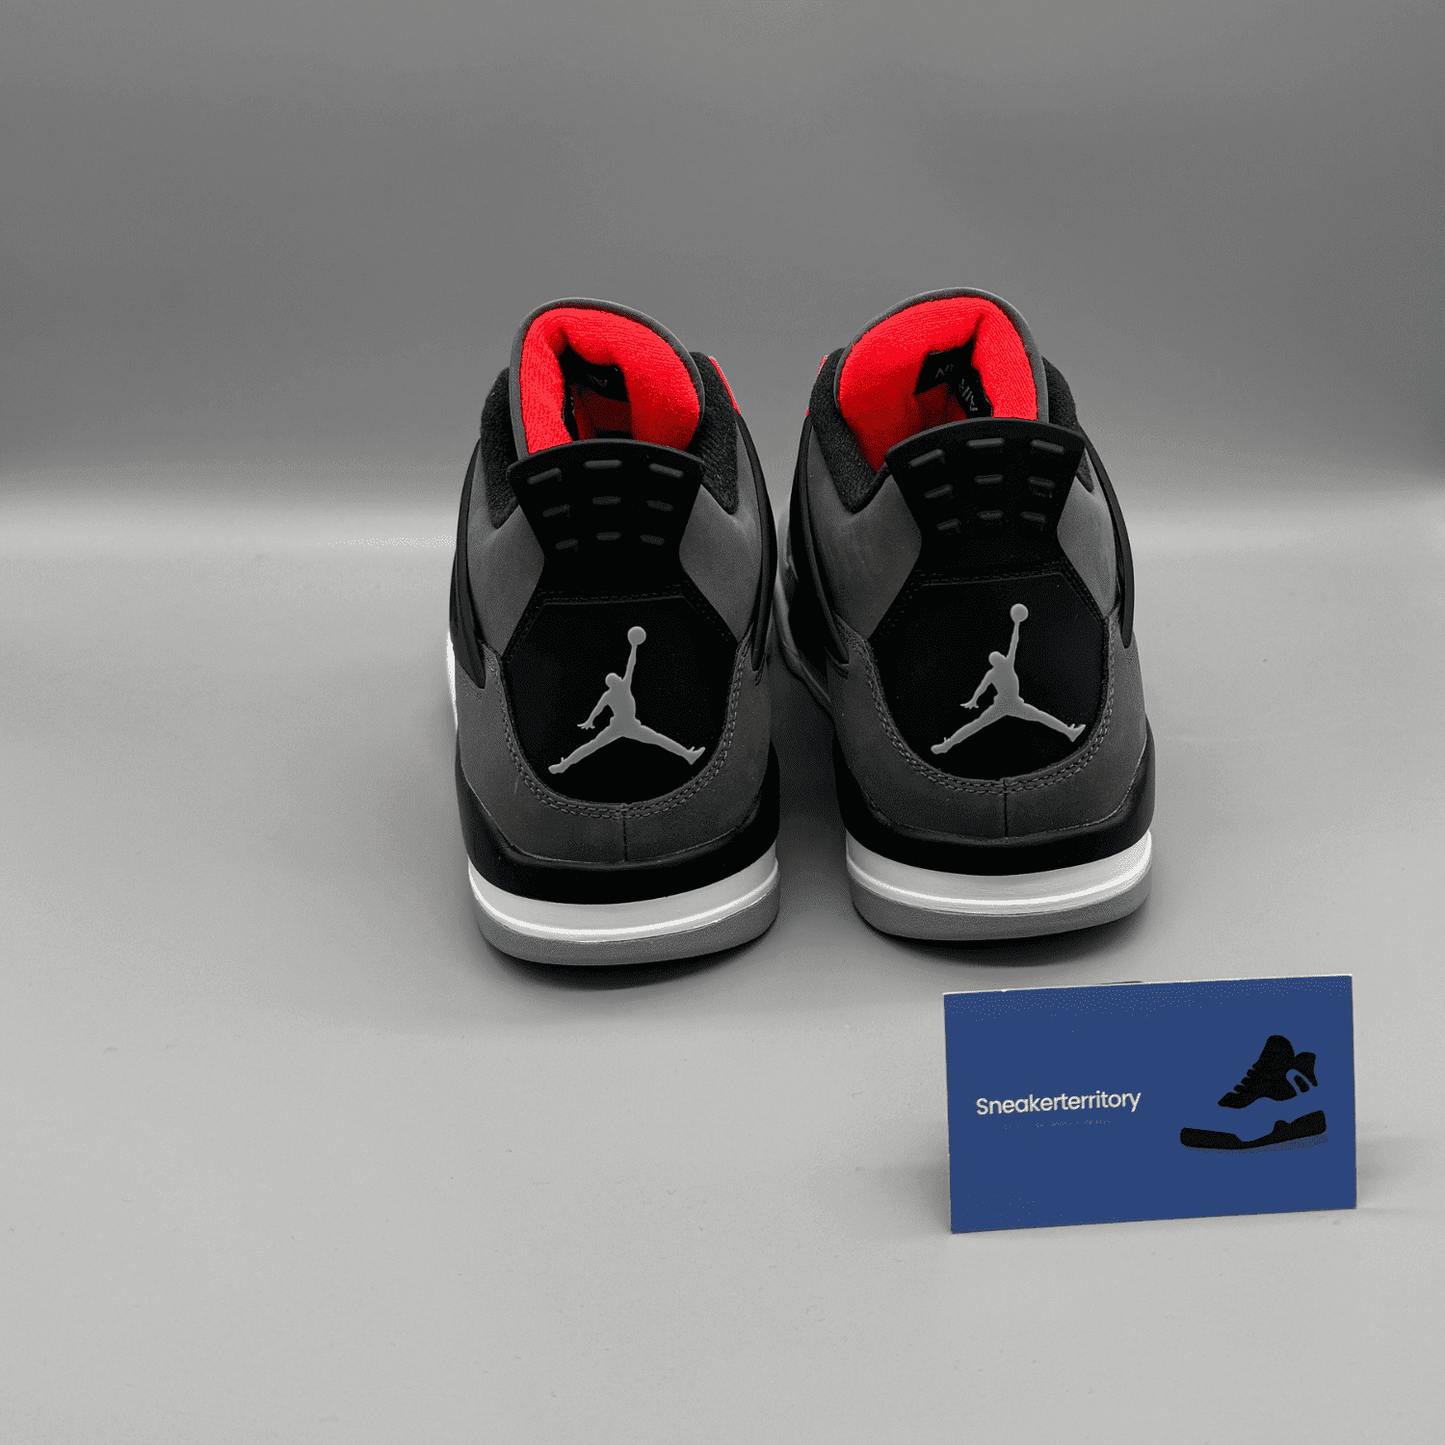 Air Jordan 4 Infrared - Sneakerterritory; Sneaker Territory